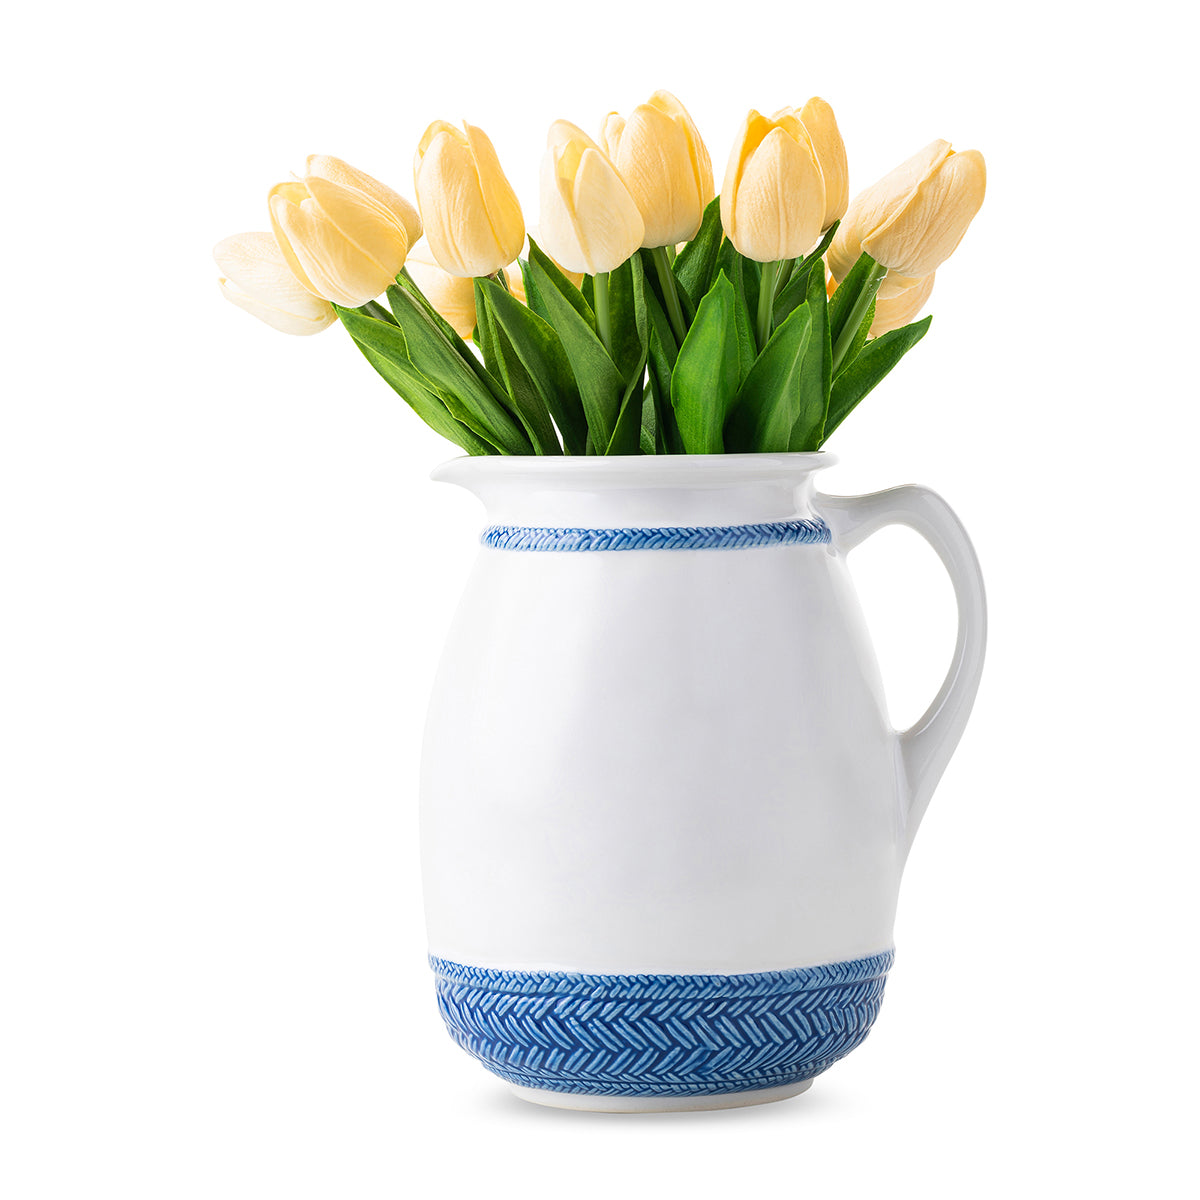 Le Panier Delft Blue Pitcher/Vase